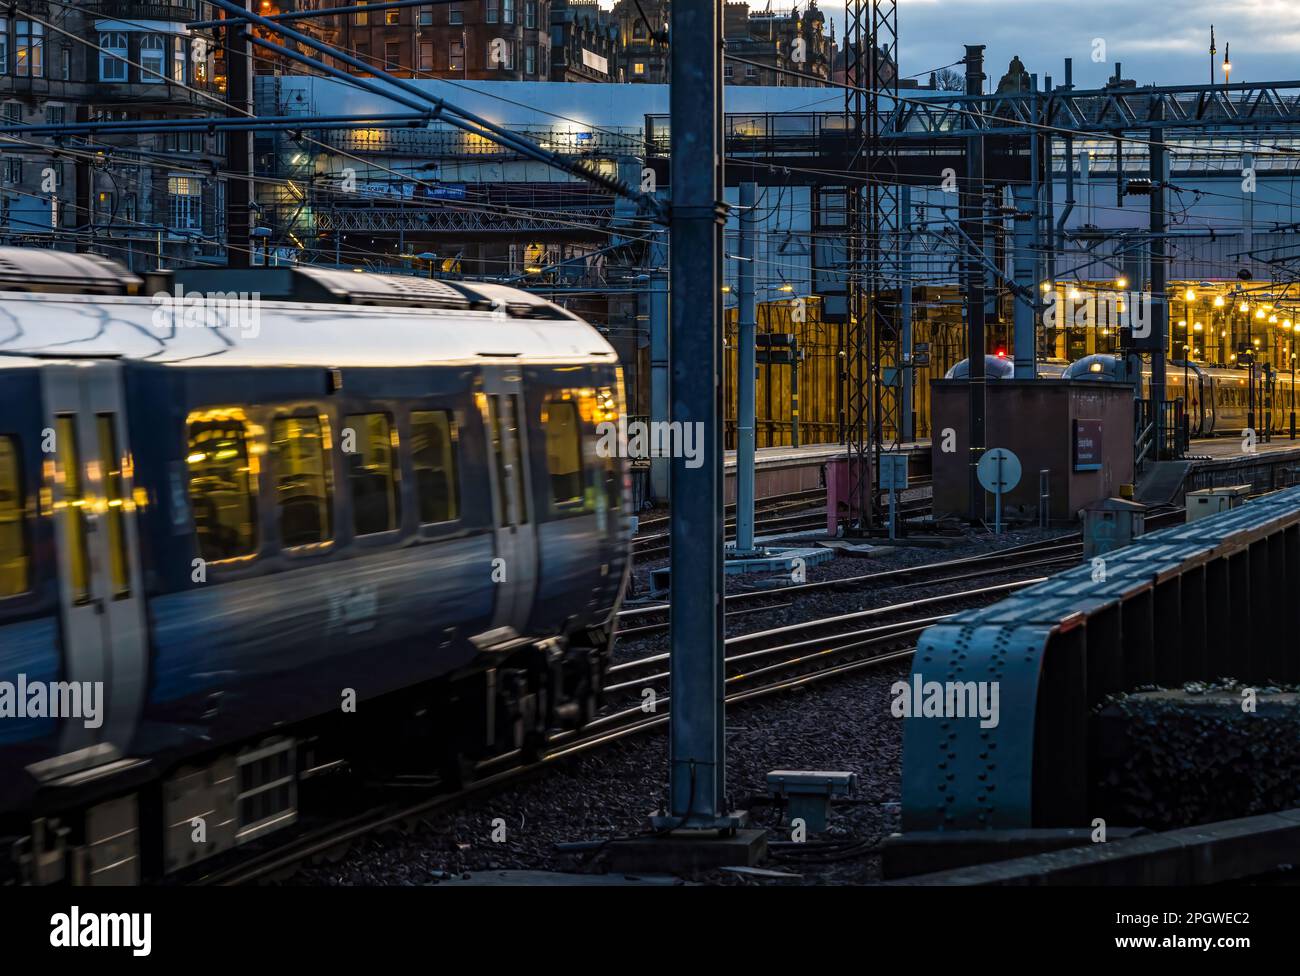 Treno che si avvicina alla stazione ferroviaria di Waverley illuminata di notte, Edimburgo, Scozia, Regno Unito Foto Stock